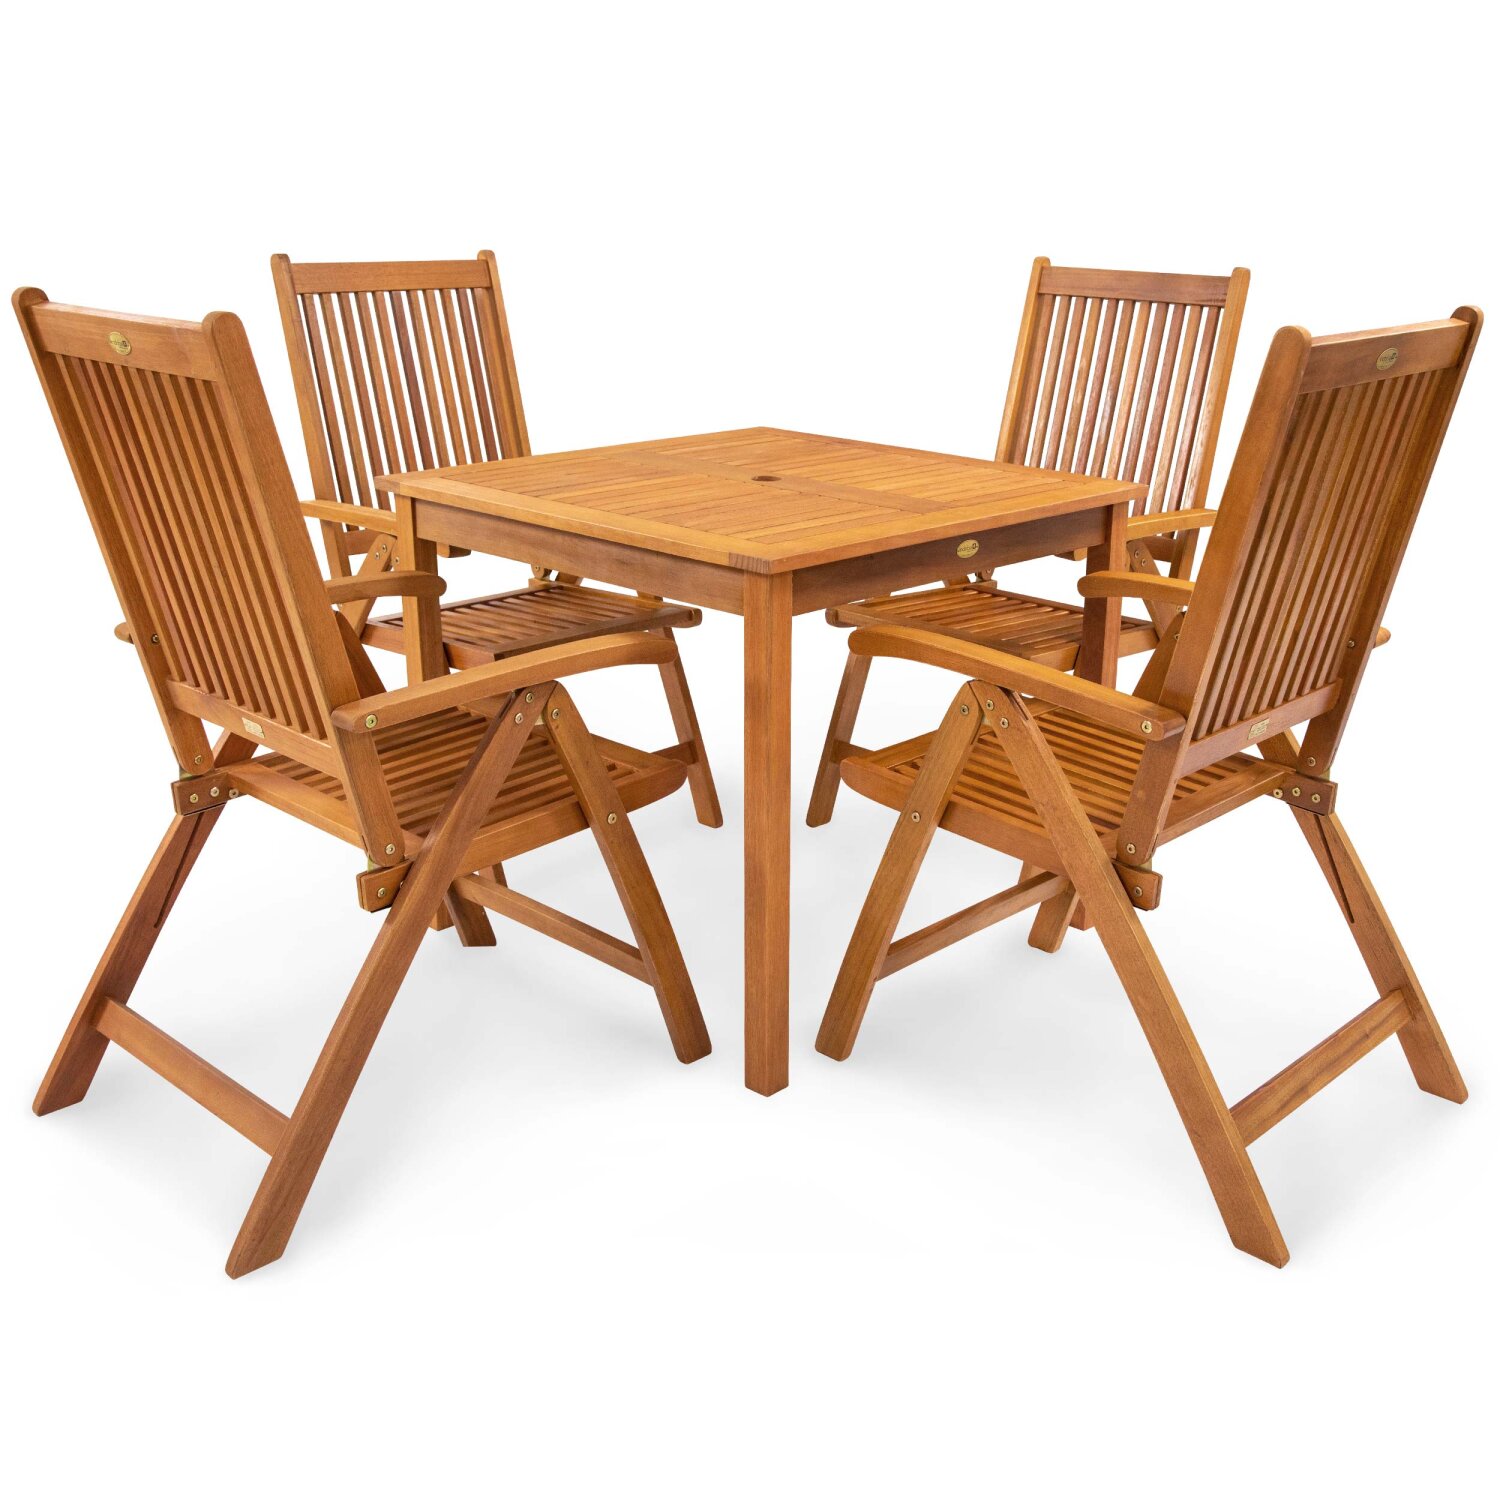 IND-70079-BASE5Q Gartenmöbel Set Bangor Garten Garnitur Sitzgruppe aus Holz 5-teilig Tisch quadrtaisch 4 x Stuhl klappbar